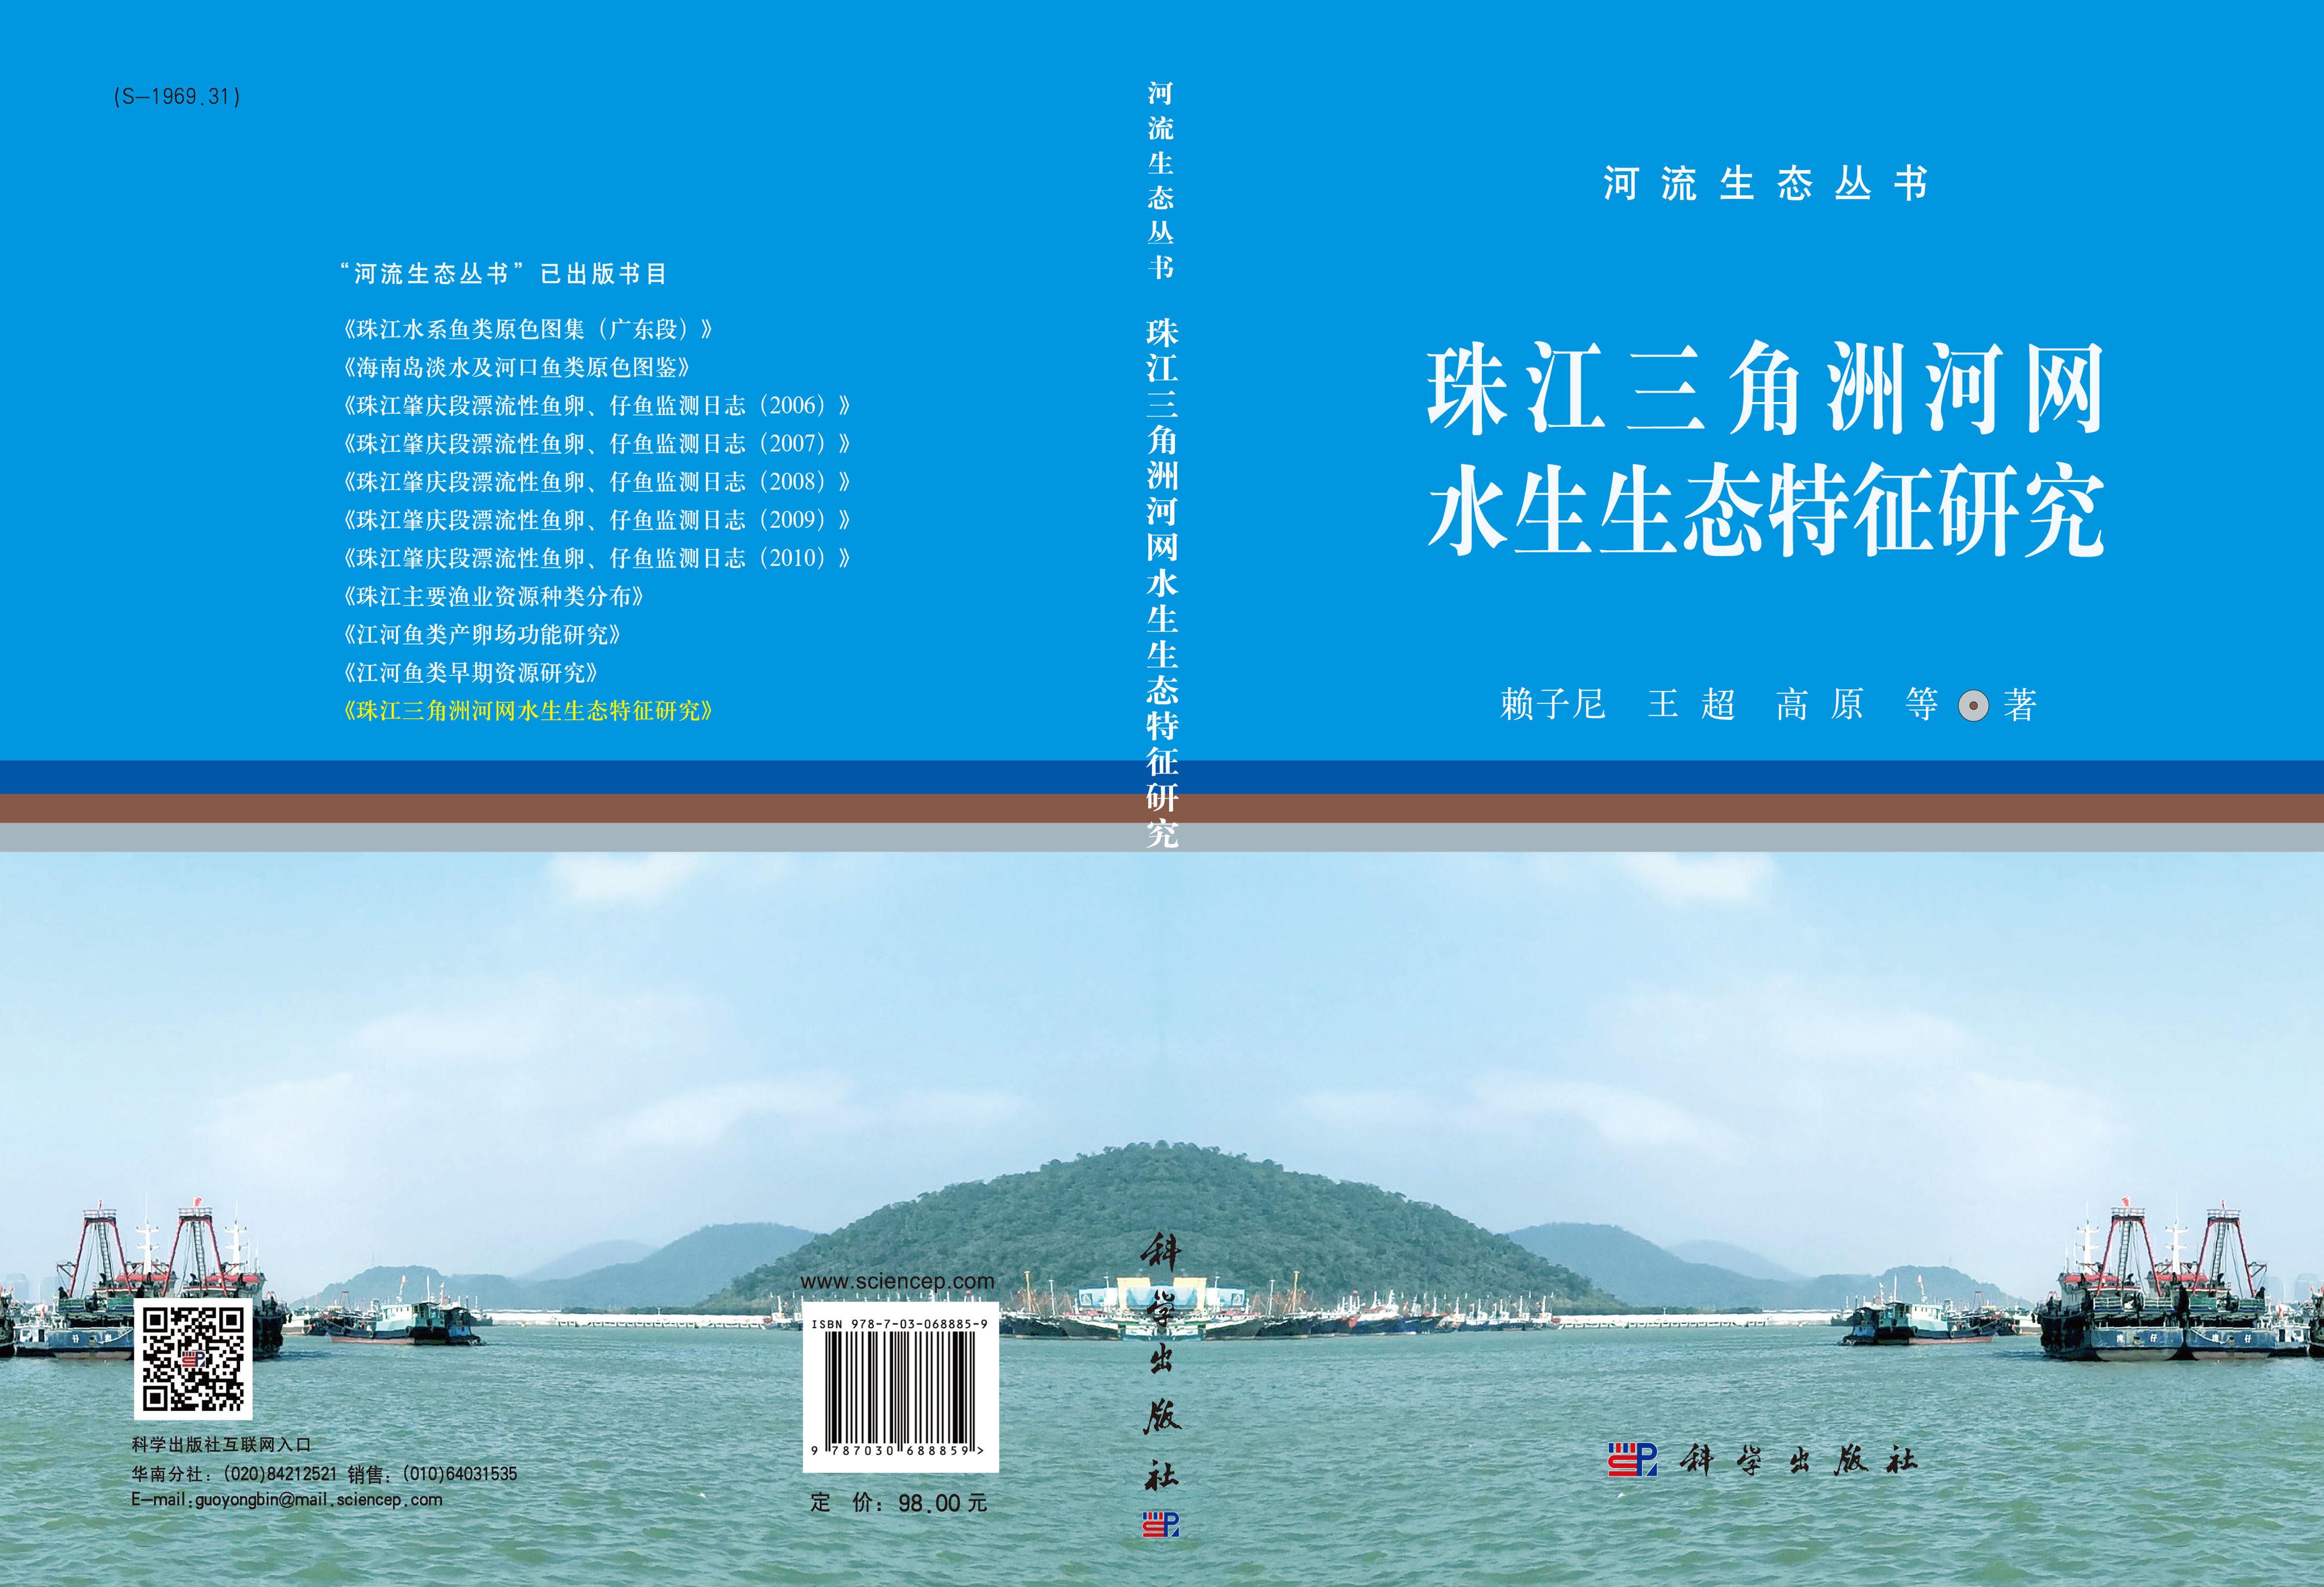 珠江三角洲河网水生生态特征研究